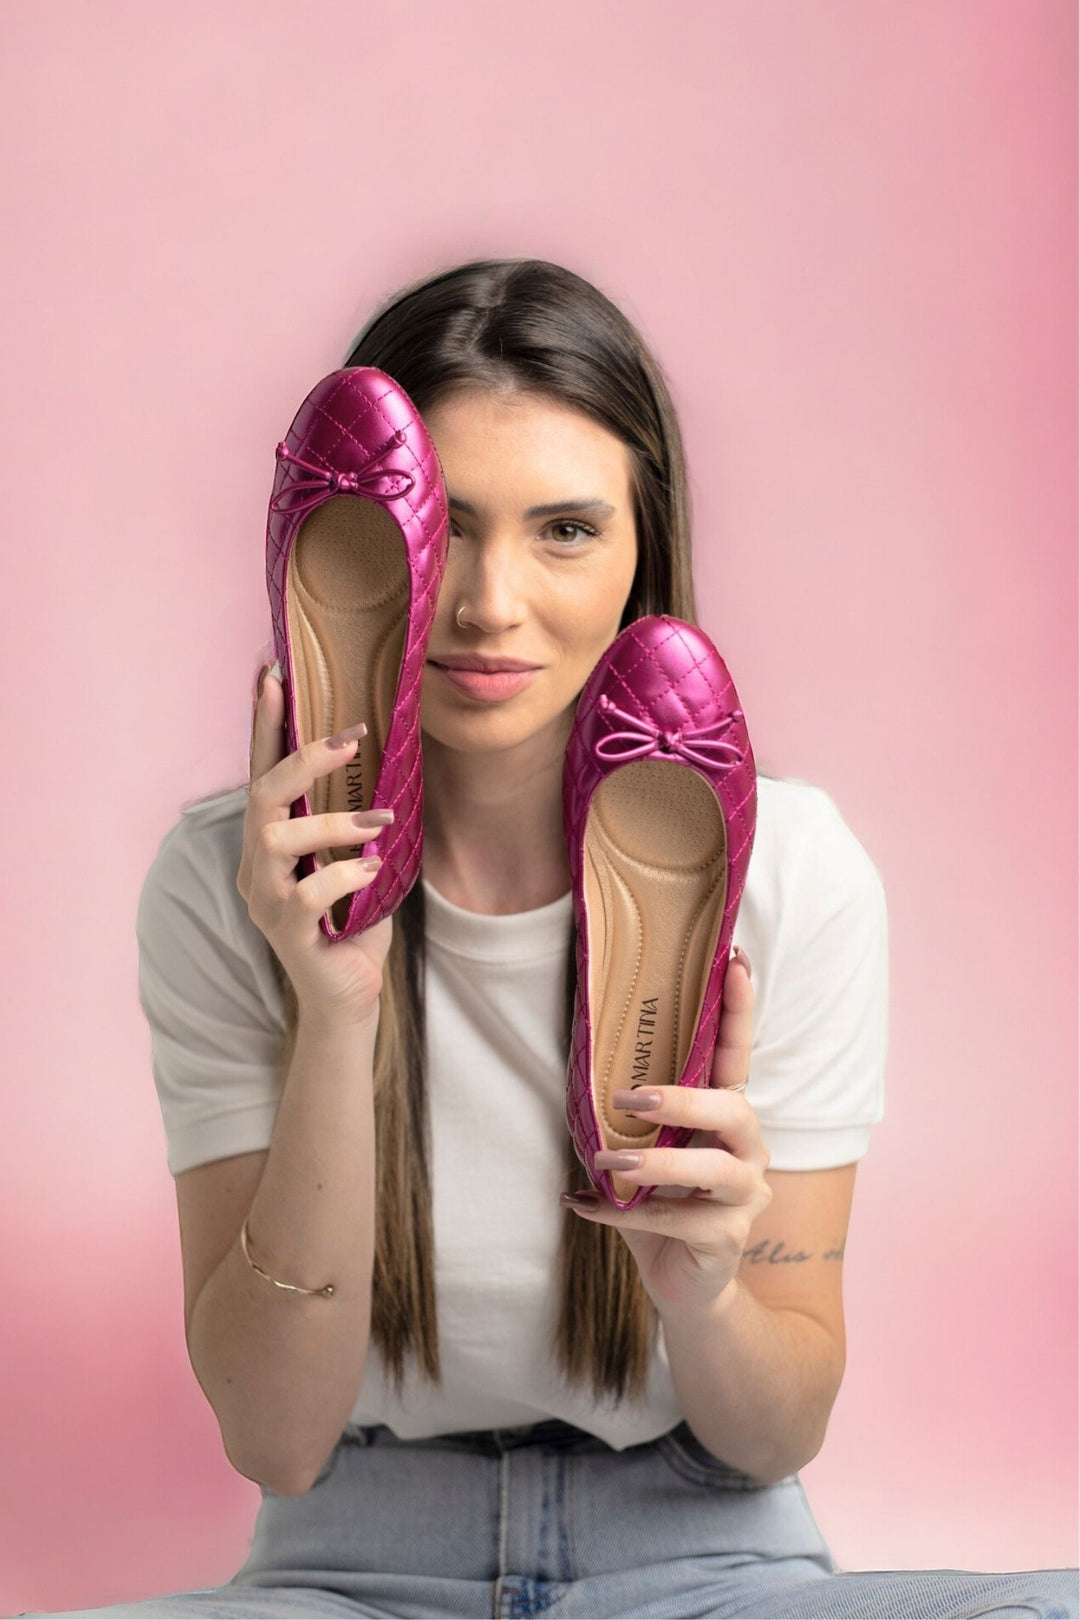 Damen Ballerina Schuhe Pink